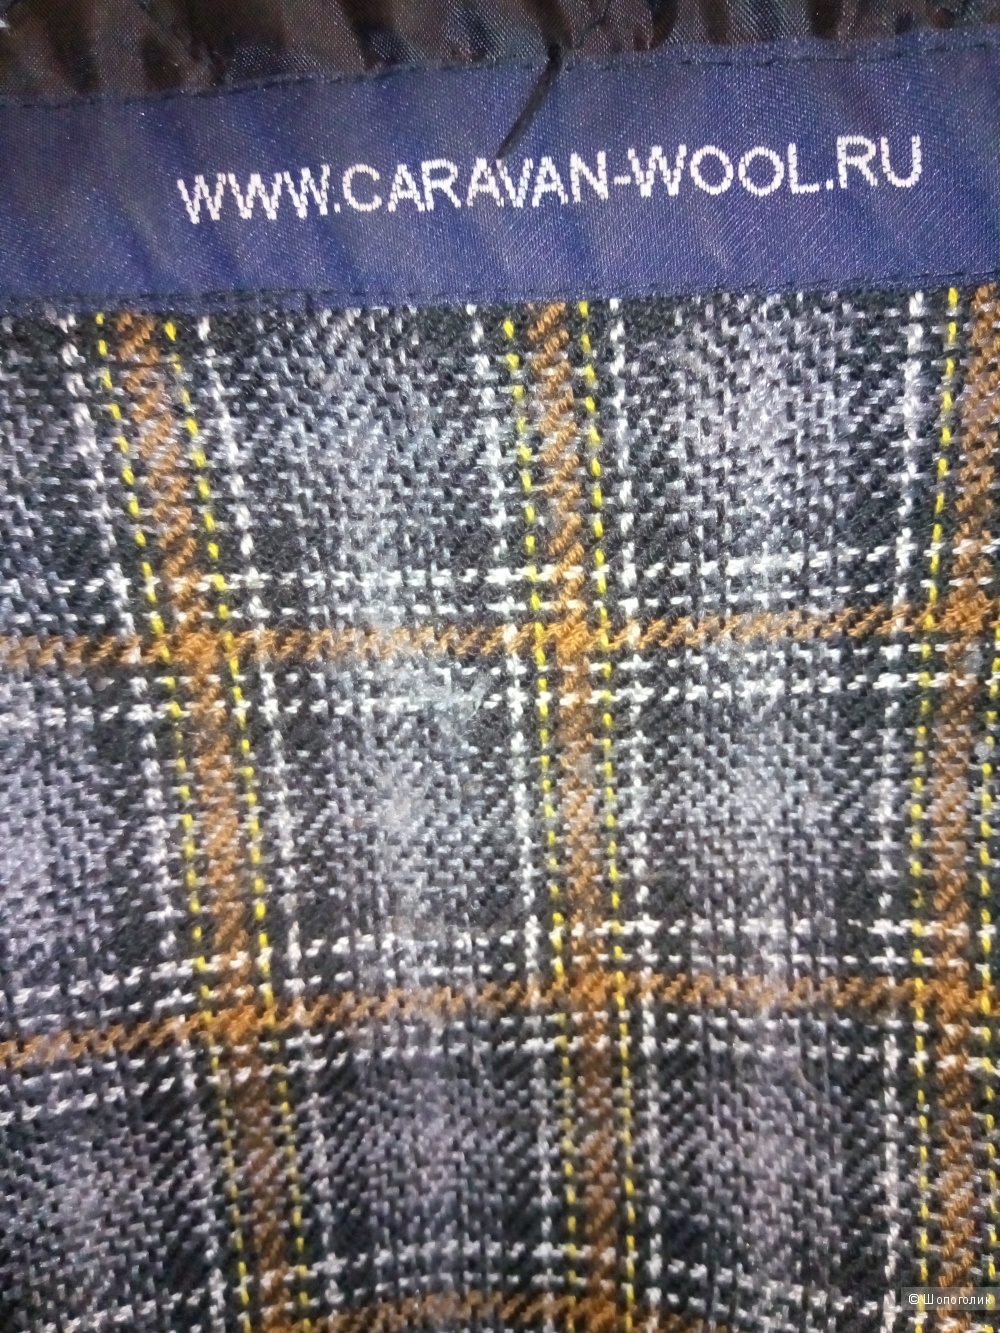 Пальто мужское Caravan wool размер 52-54